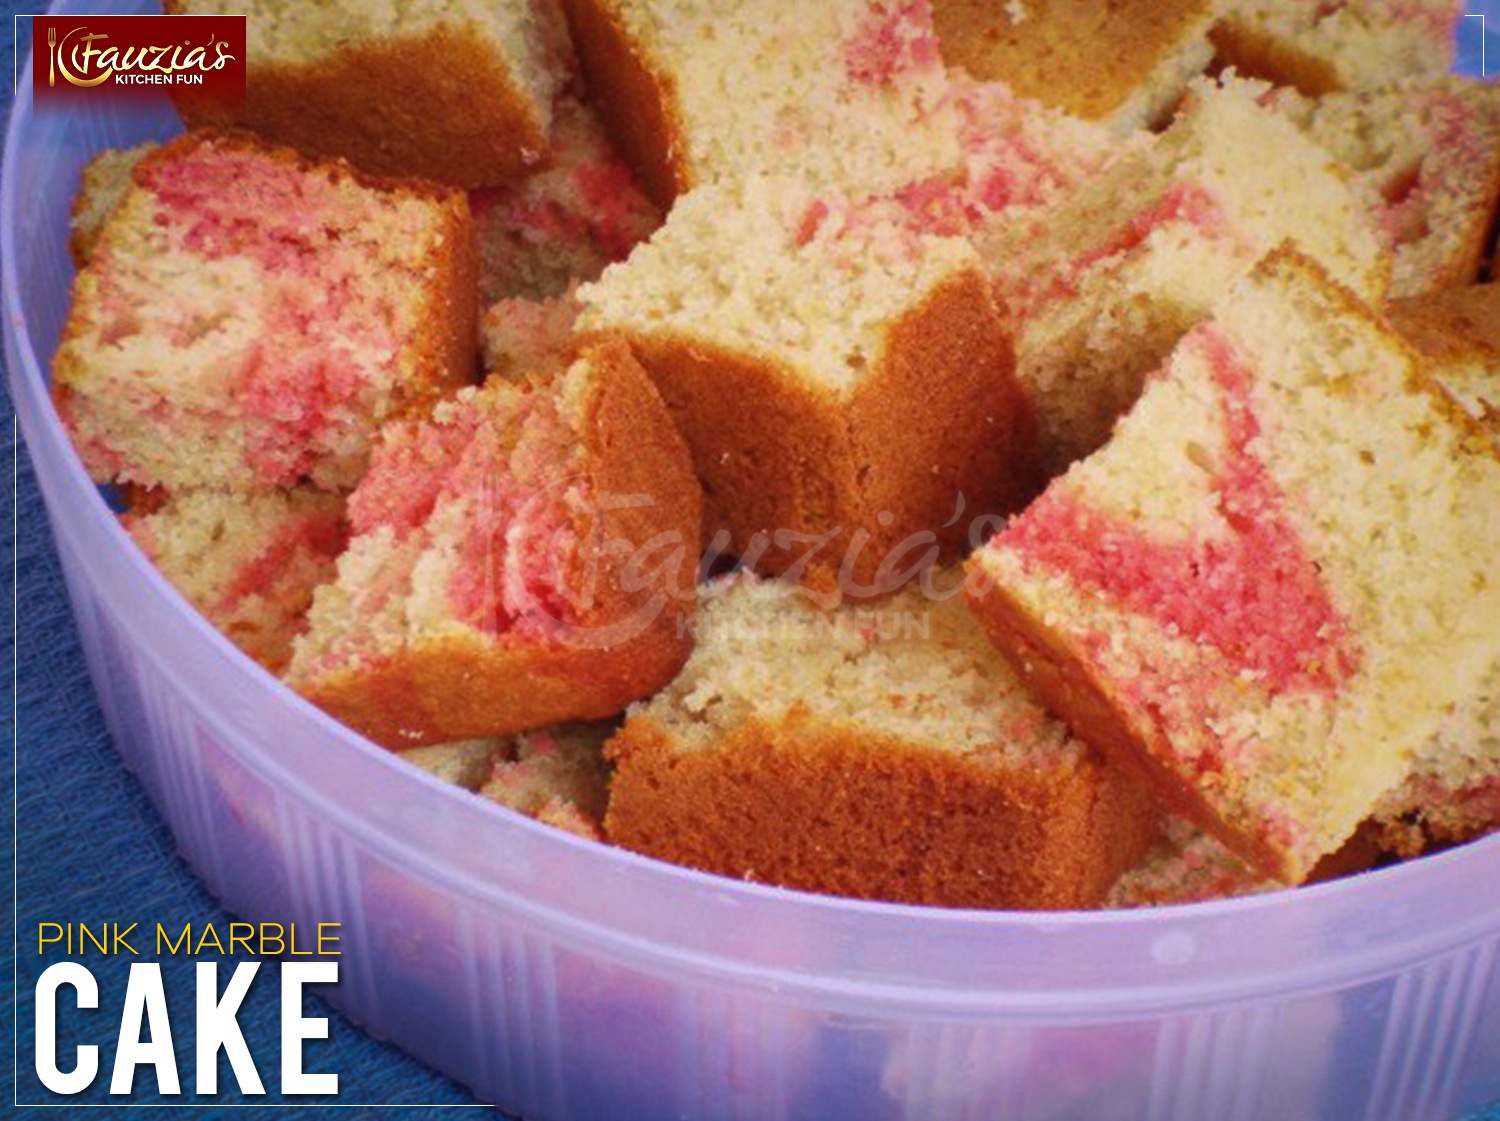 DEZICAKES Fake Cake Pink Marble Glaze Cake Prop Decoration - Etsy Denmark